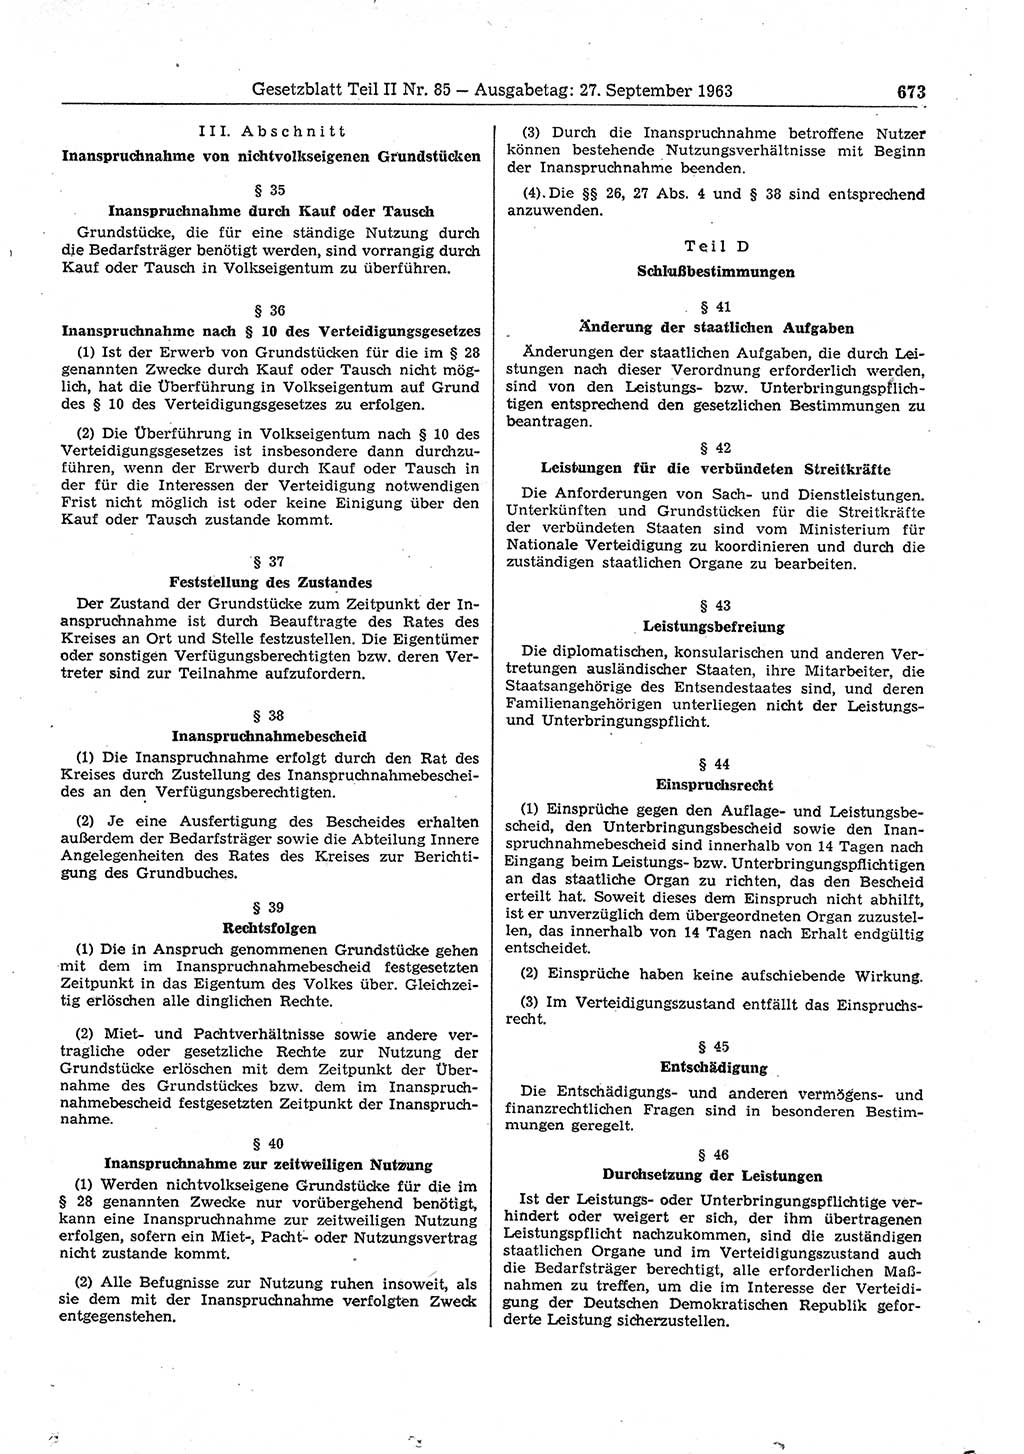 Gesetzblatt (GBl.) der Deutschen Demokratischen Republik (DDR) Teil ⅠⅠ 1963, Seite 673 (GBl. DDR ⅠⅠ 1963, S. 673)